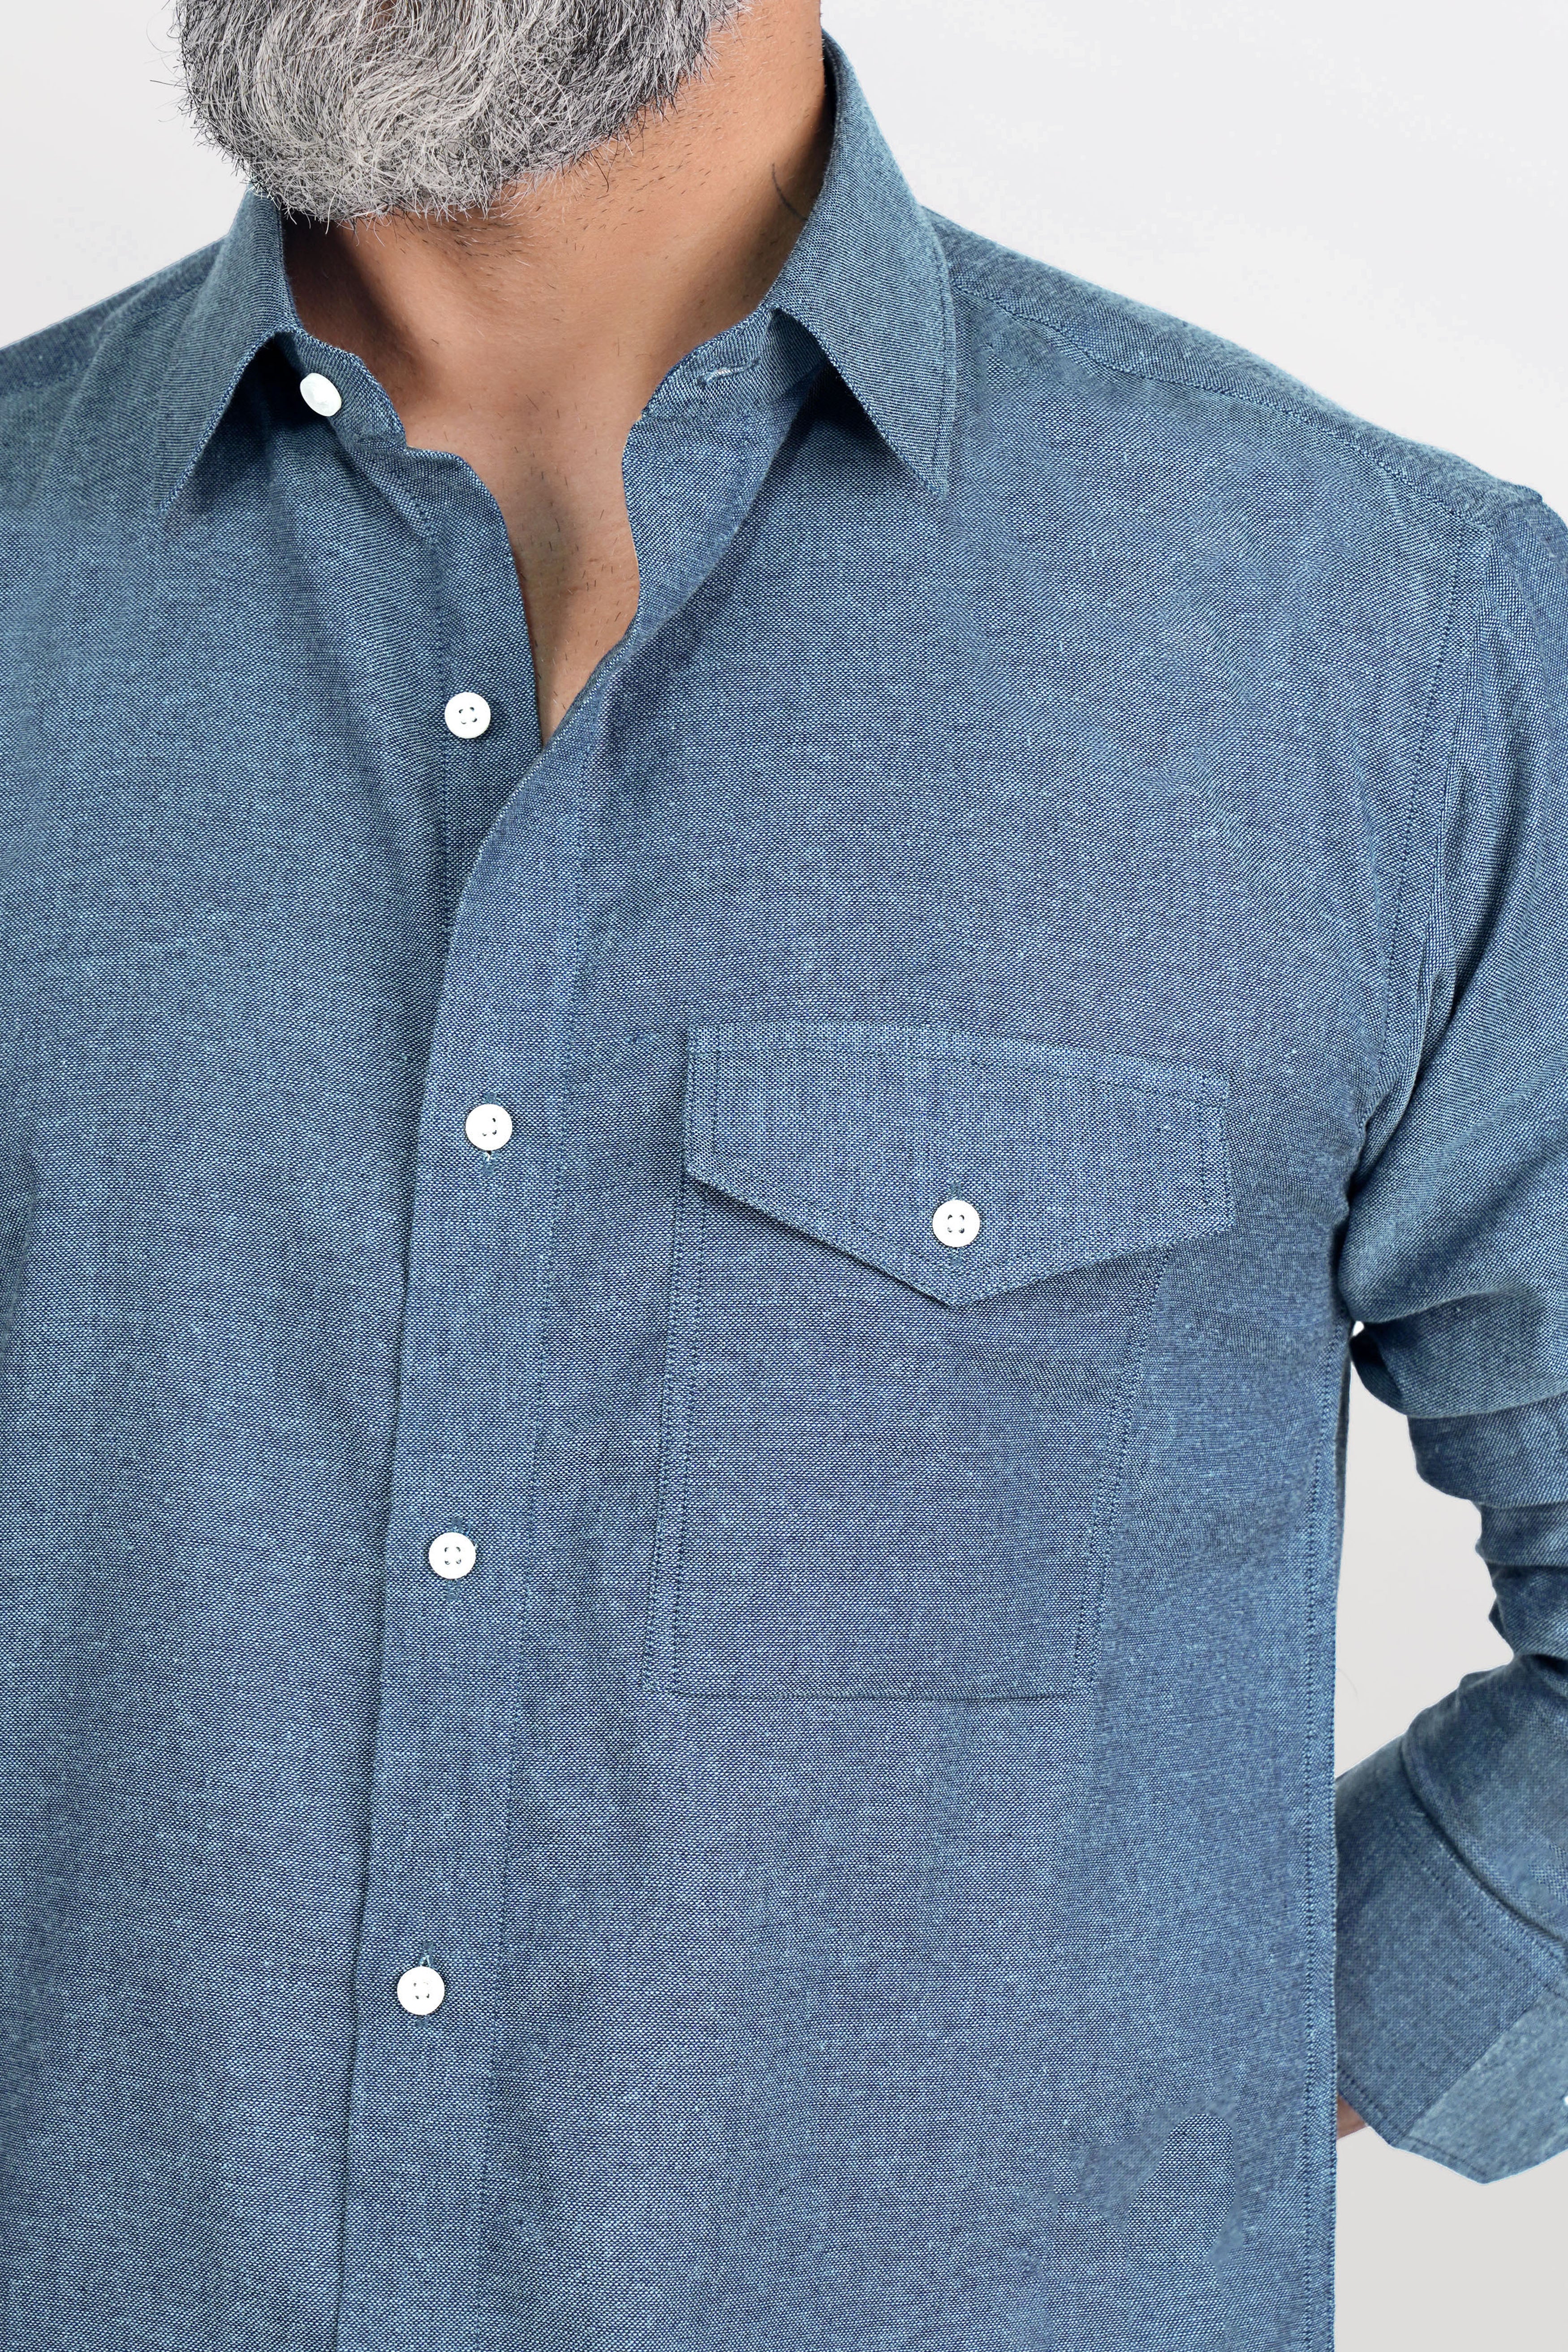 Kashmir Blue Luxurious Linen Shirt